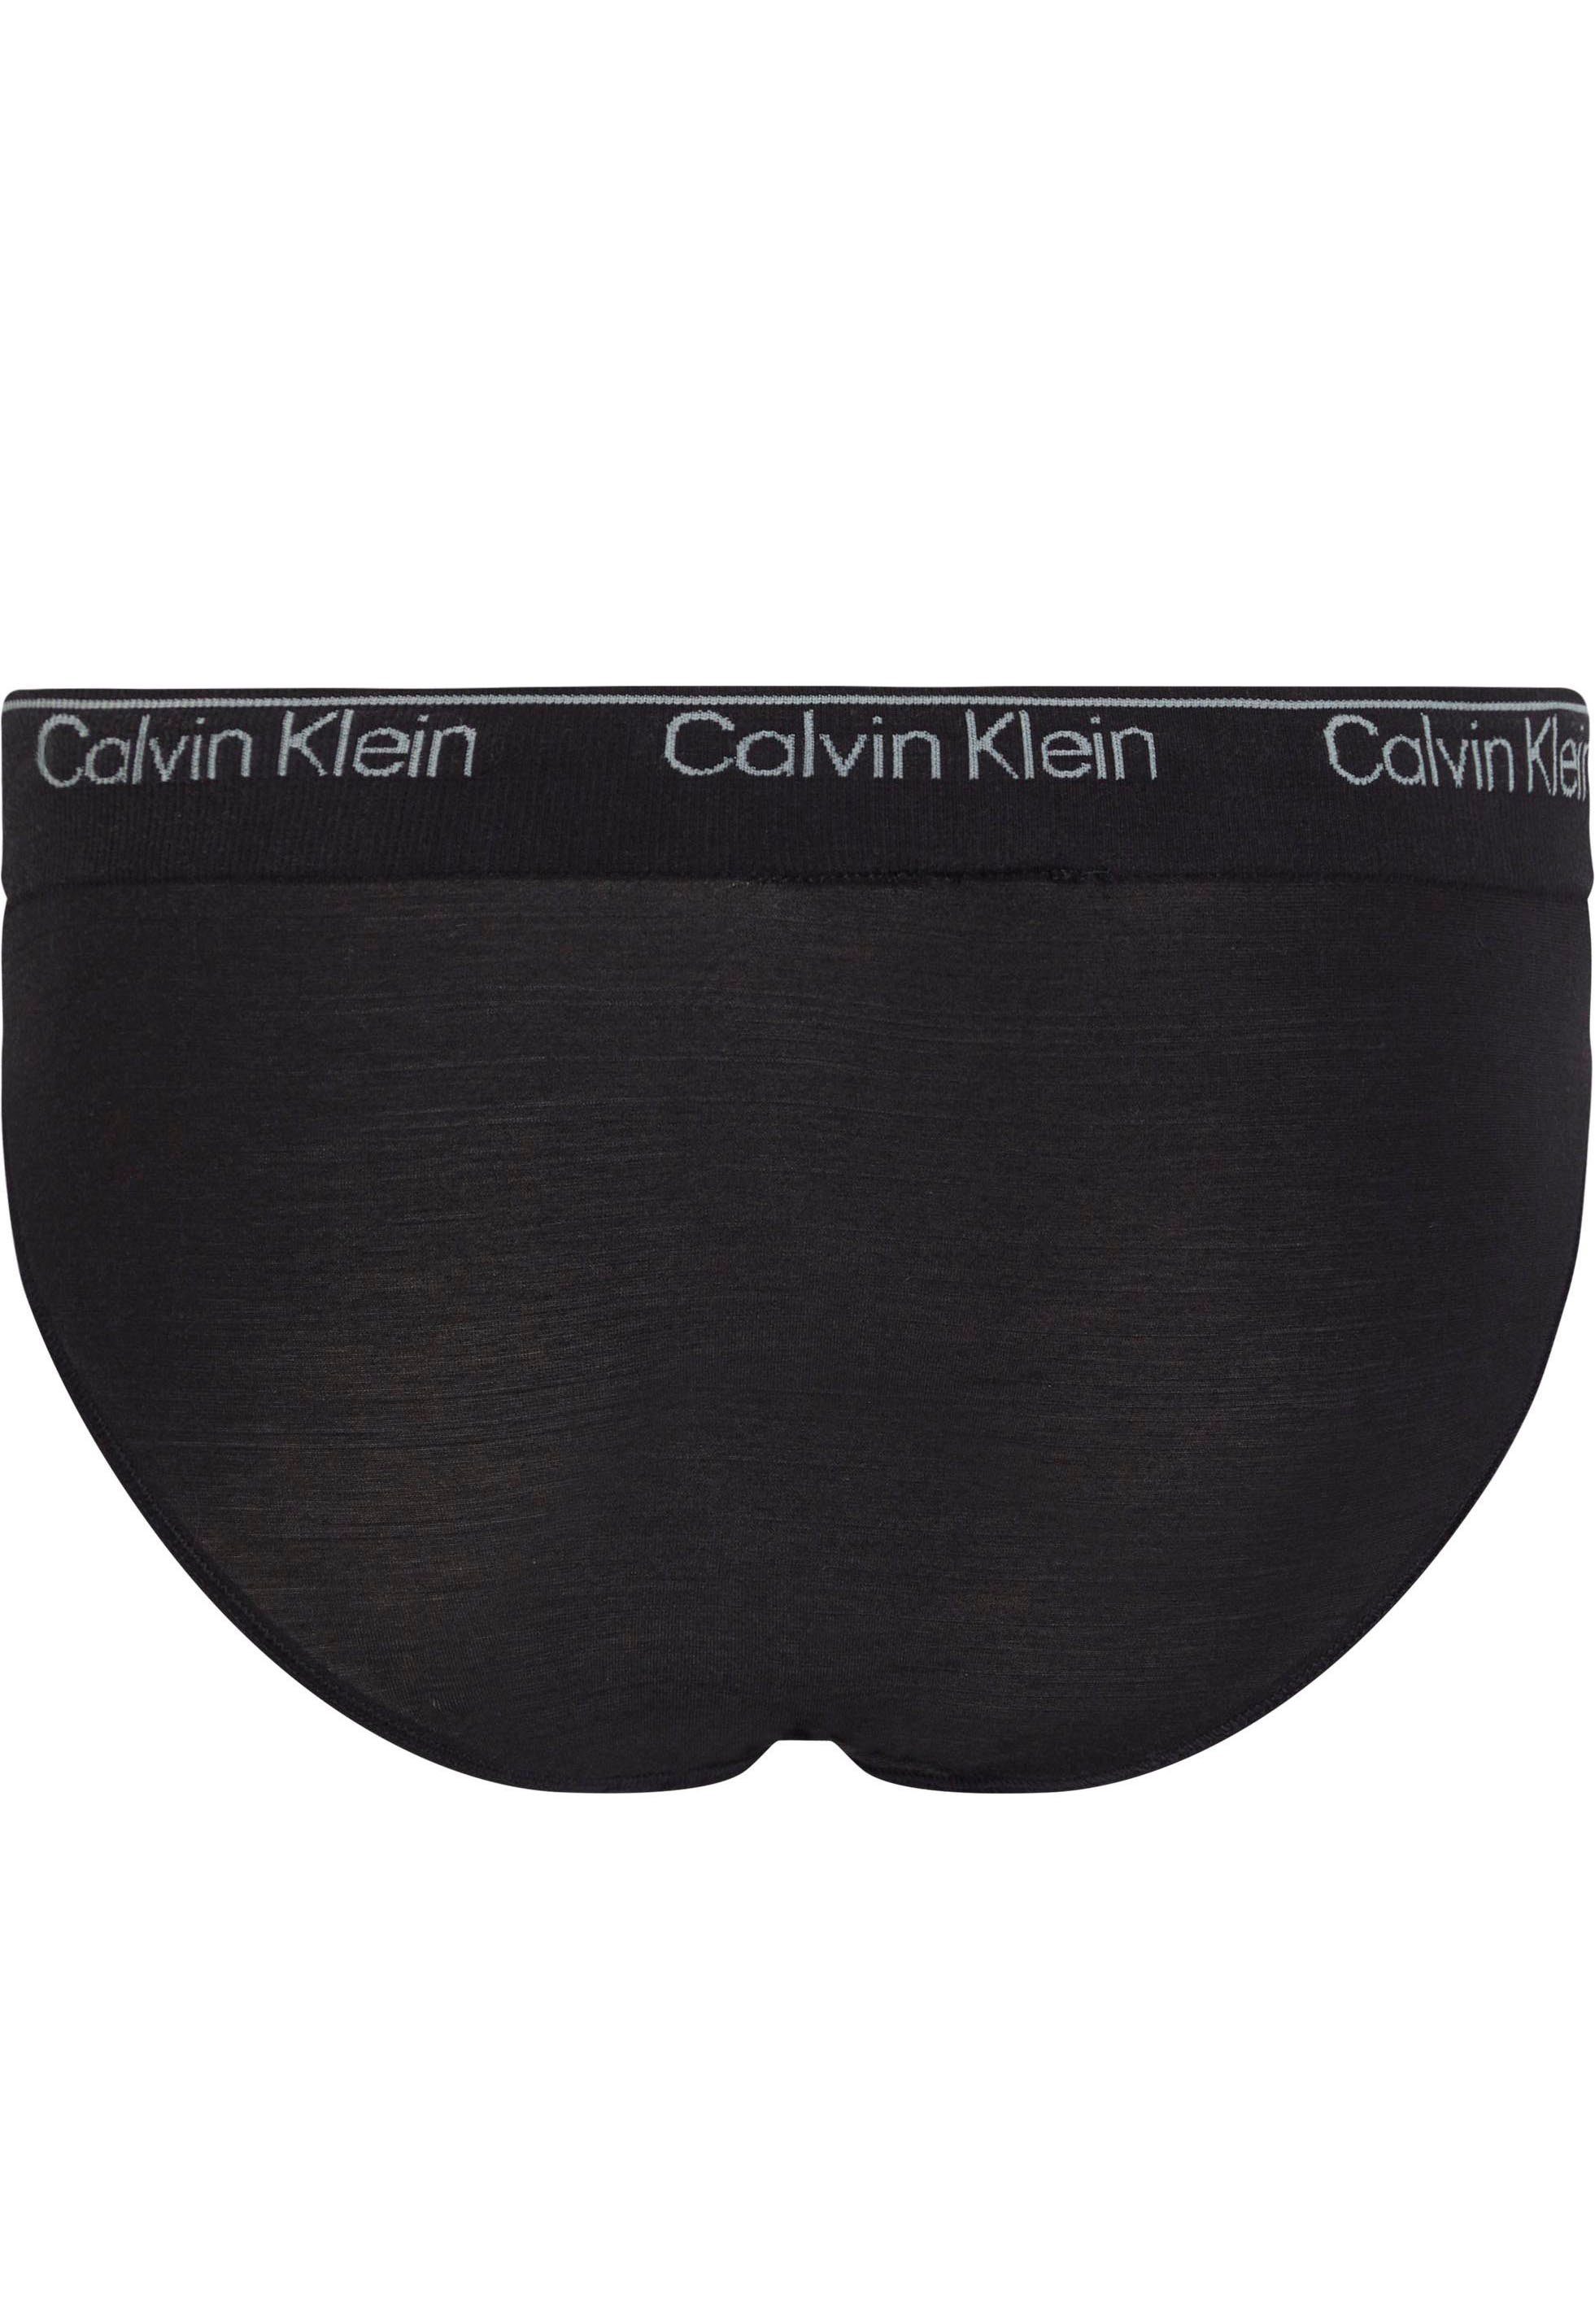 Calvin Klein CK-Logo am mit Underwear Bikinislip Bund BIKINI schwarz